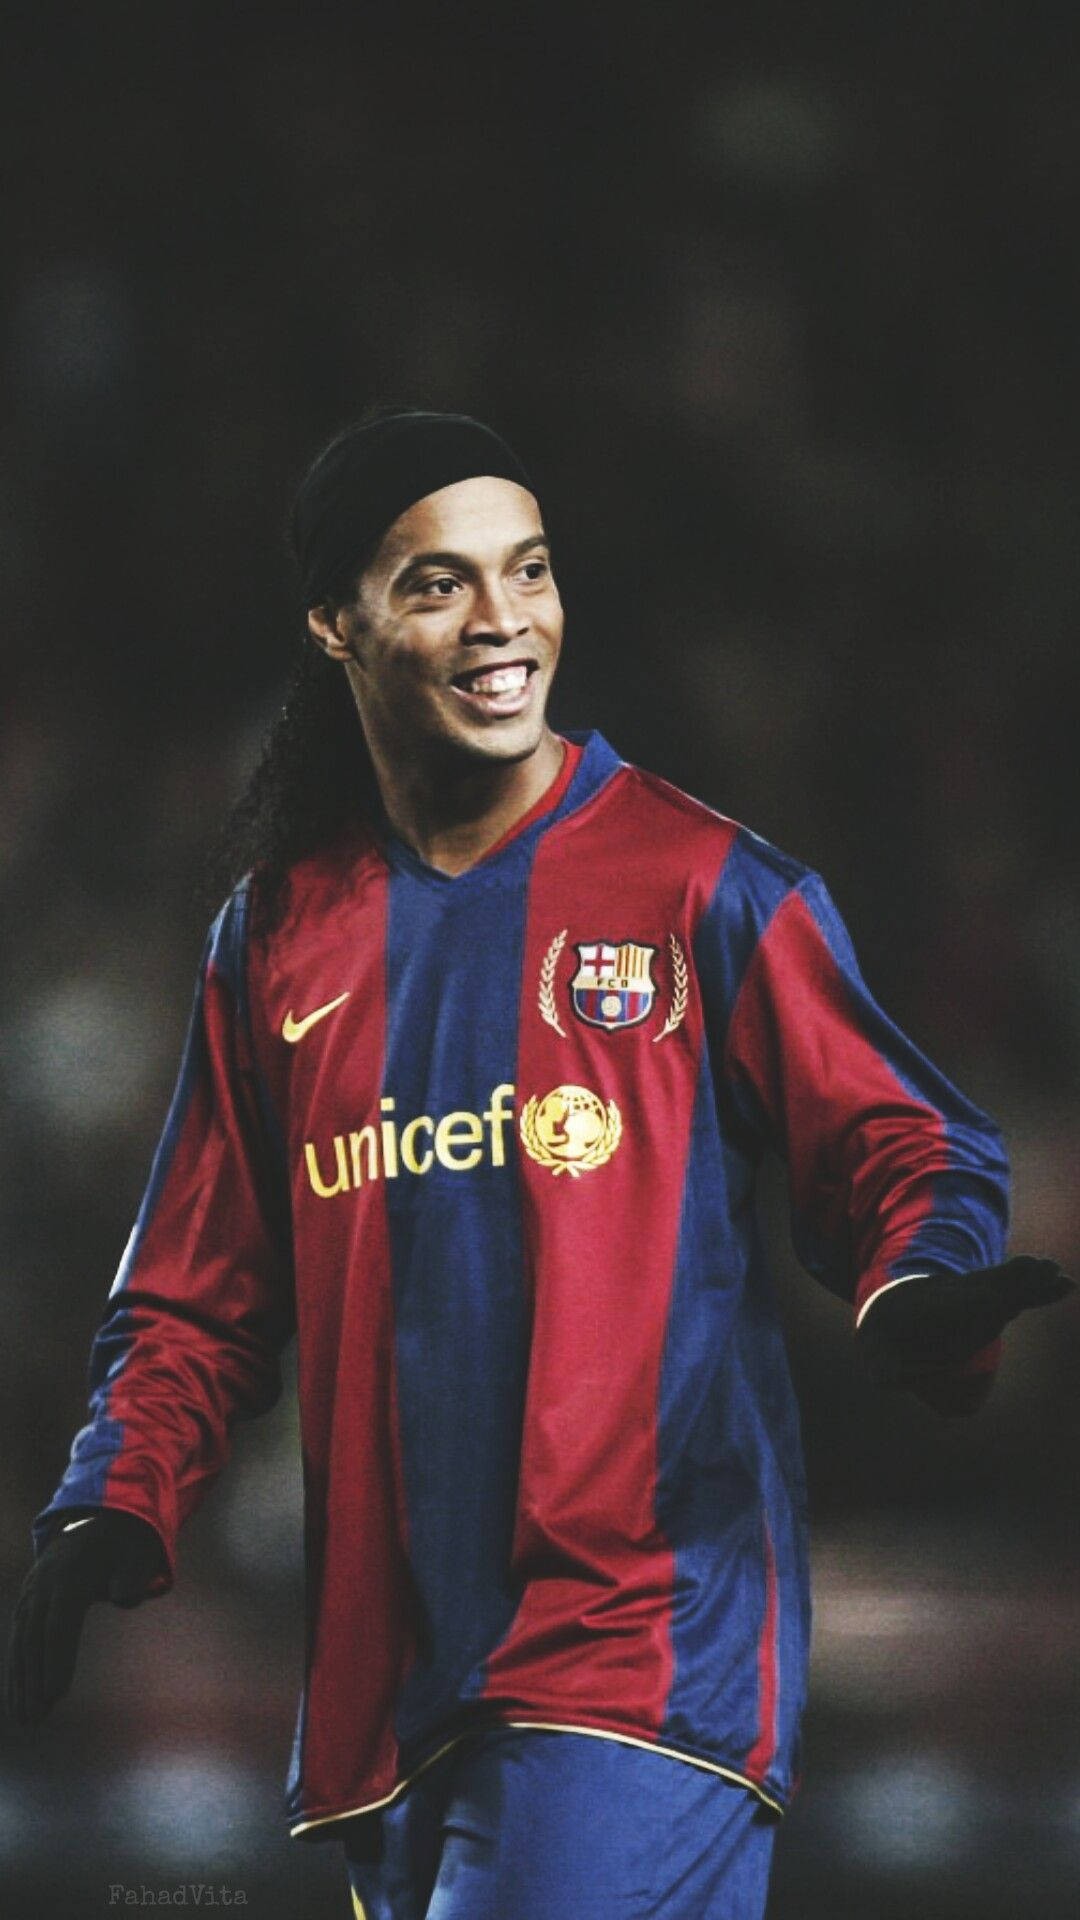 Unicef Uniform Ronaldinho Background